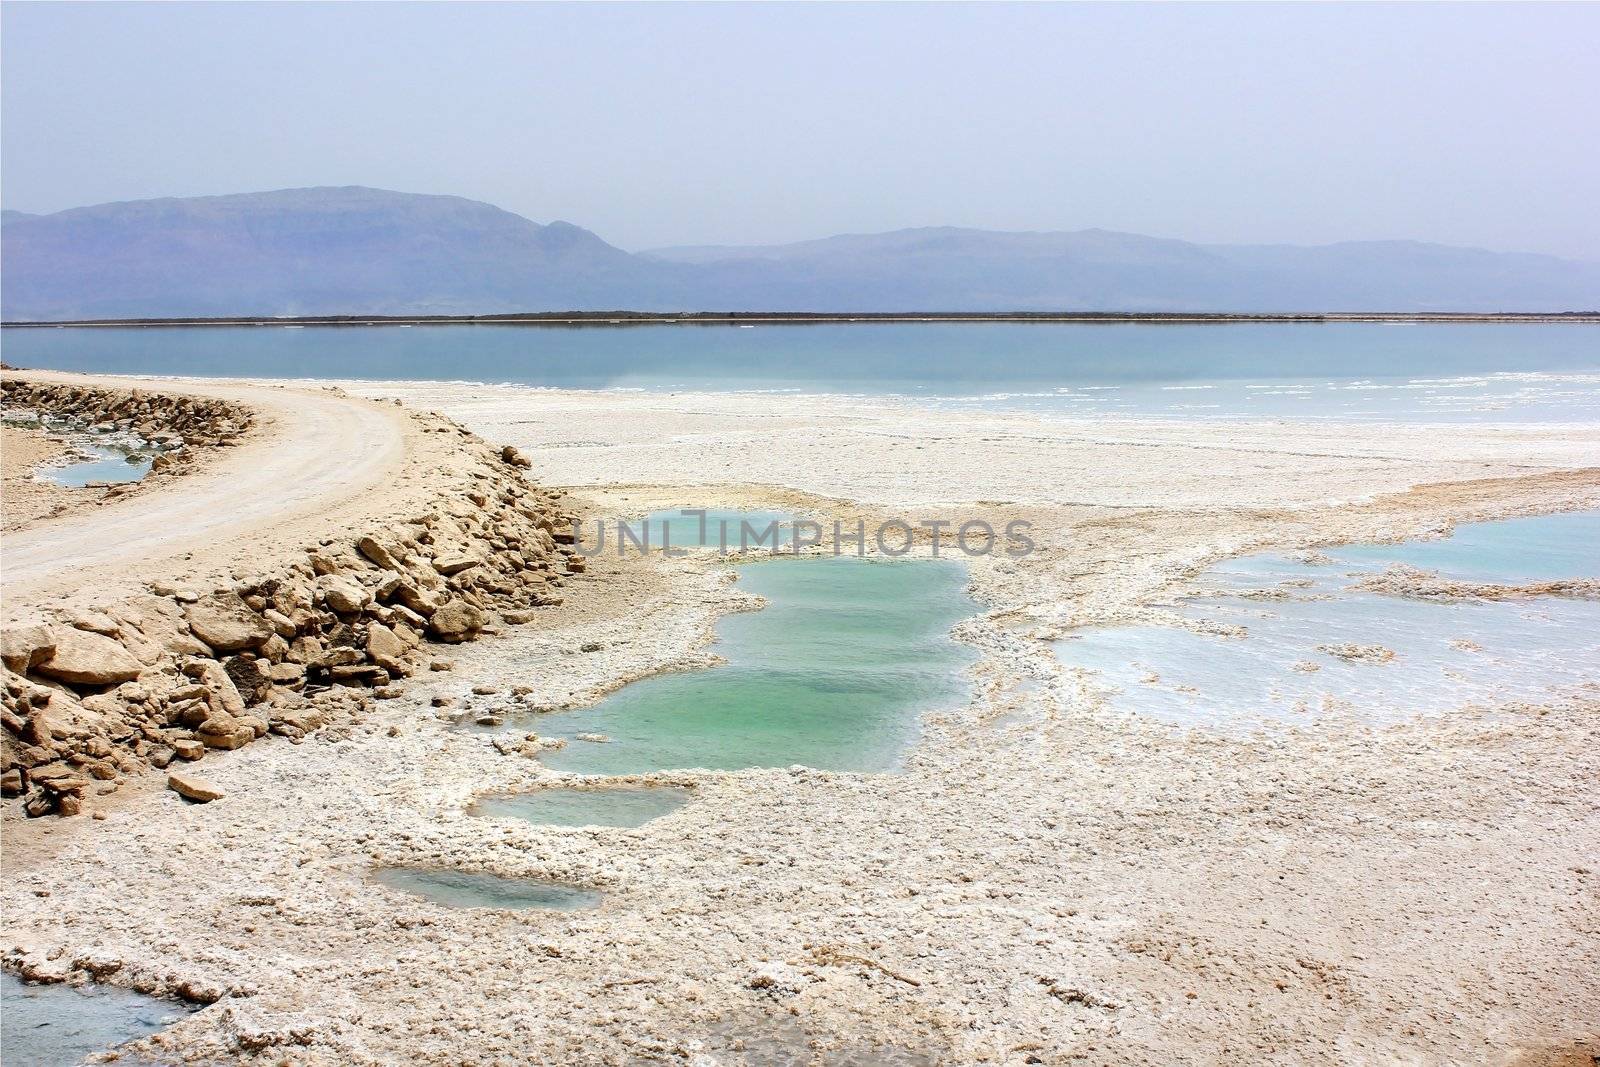 salty Dead Sea shore by irisphoto4